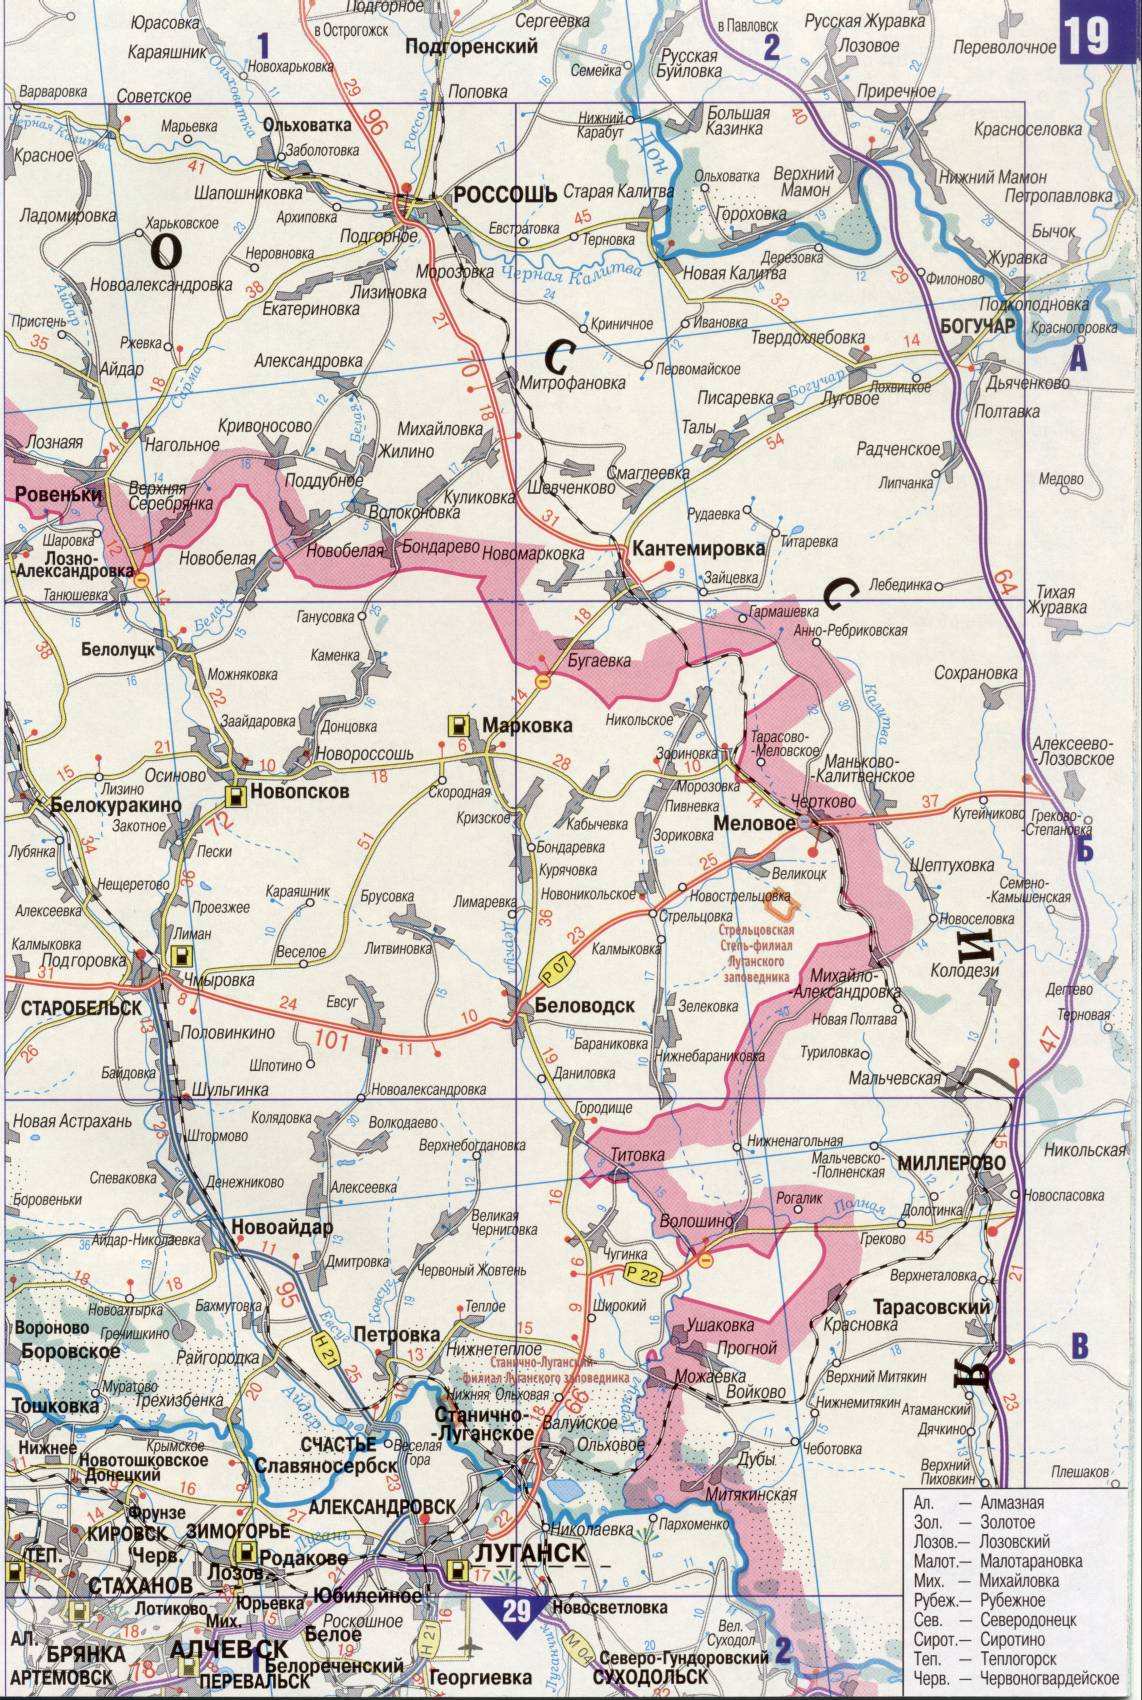 Карта Украины. Подробная карта дорог Украина из автомобильног атласа. скачать бесплатно, J1